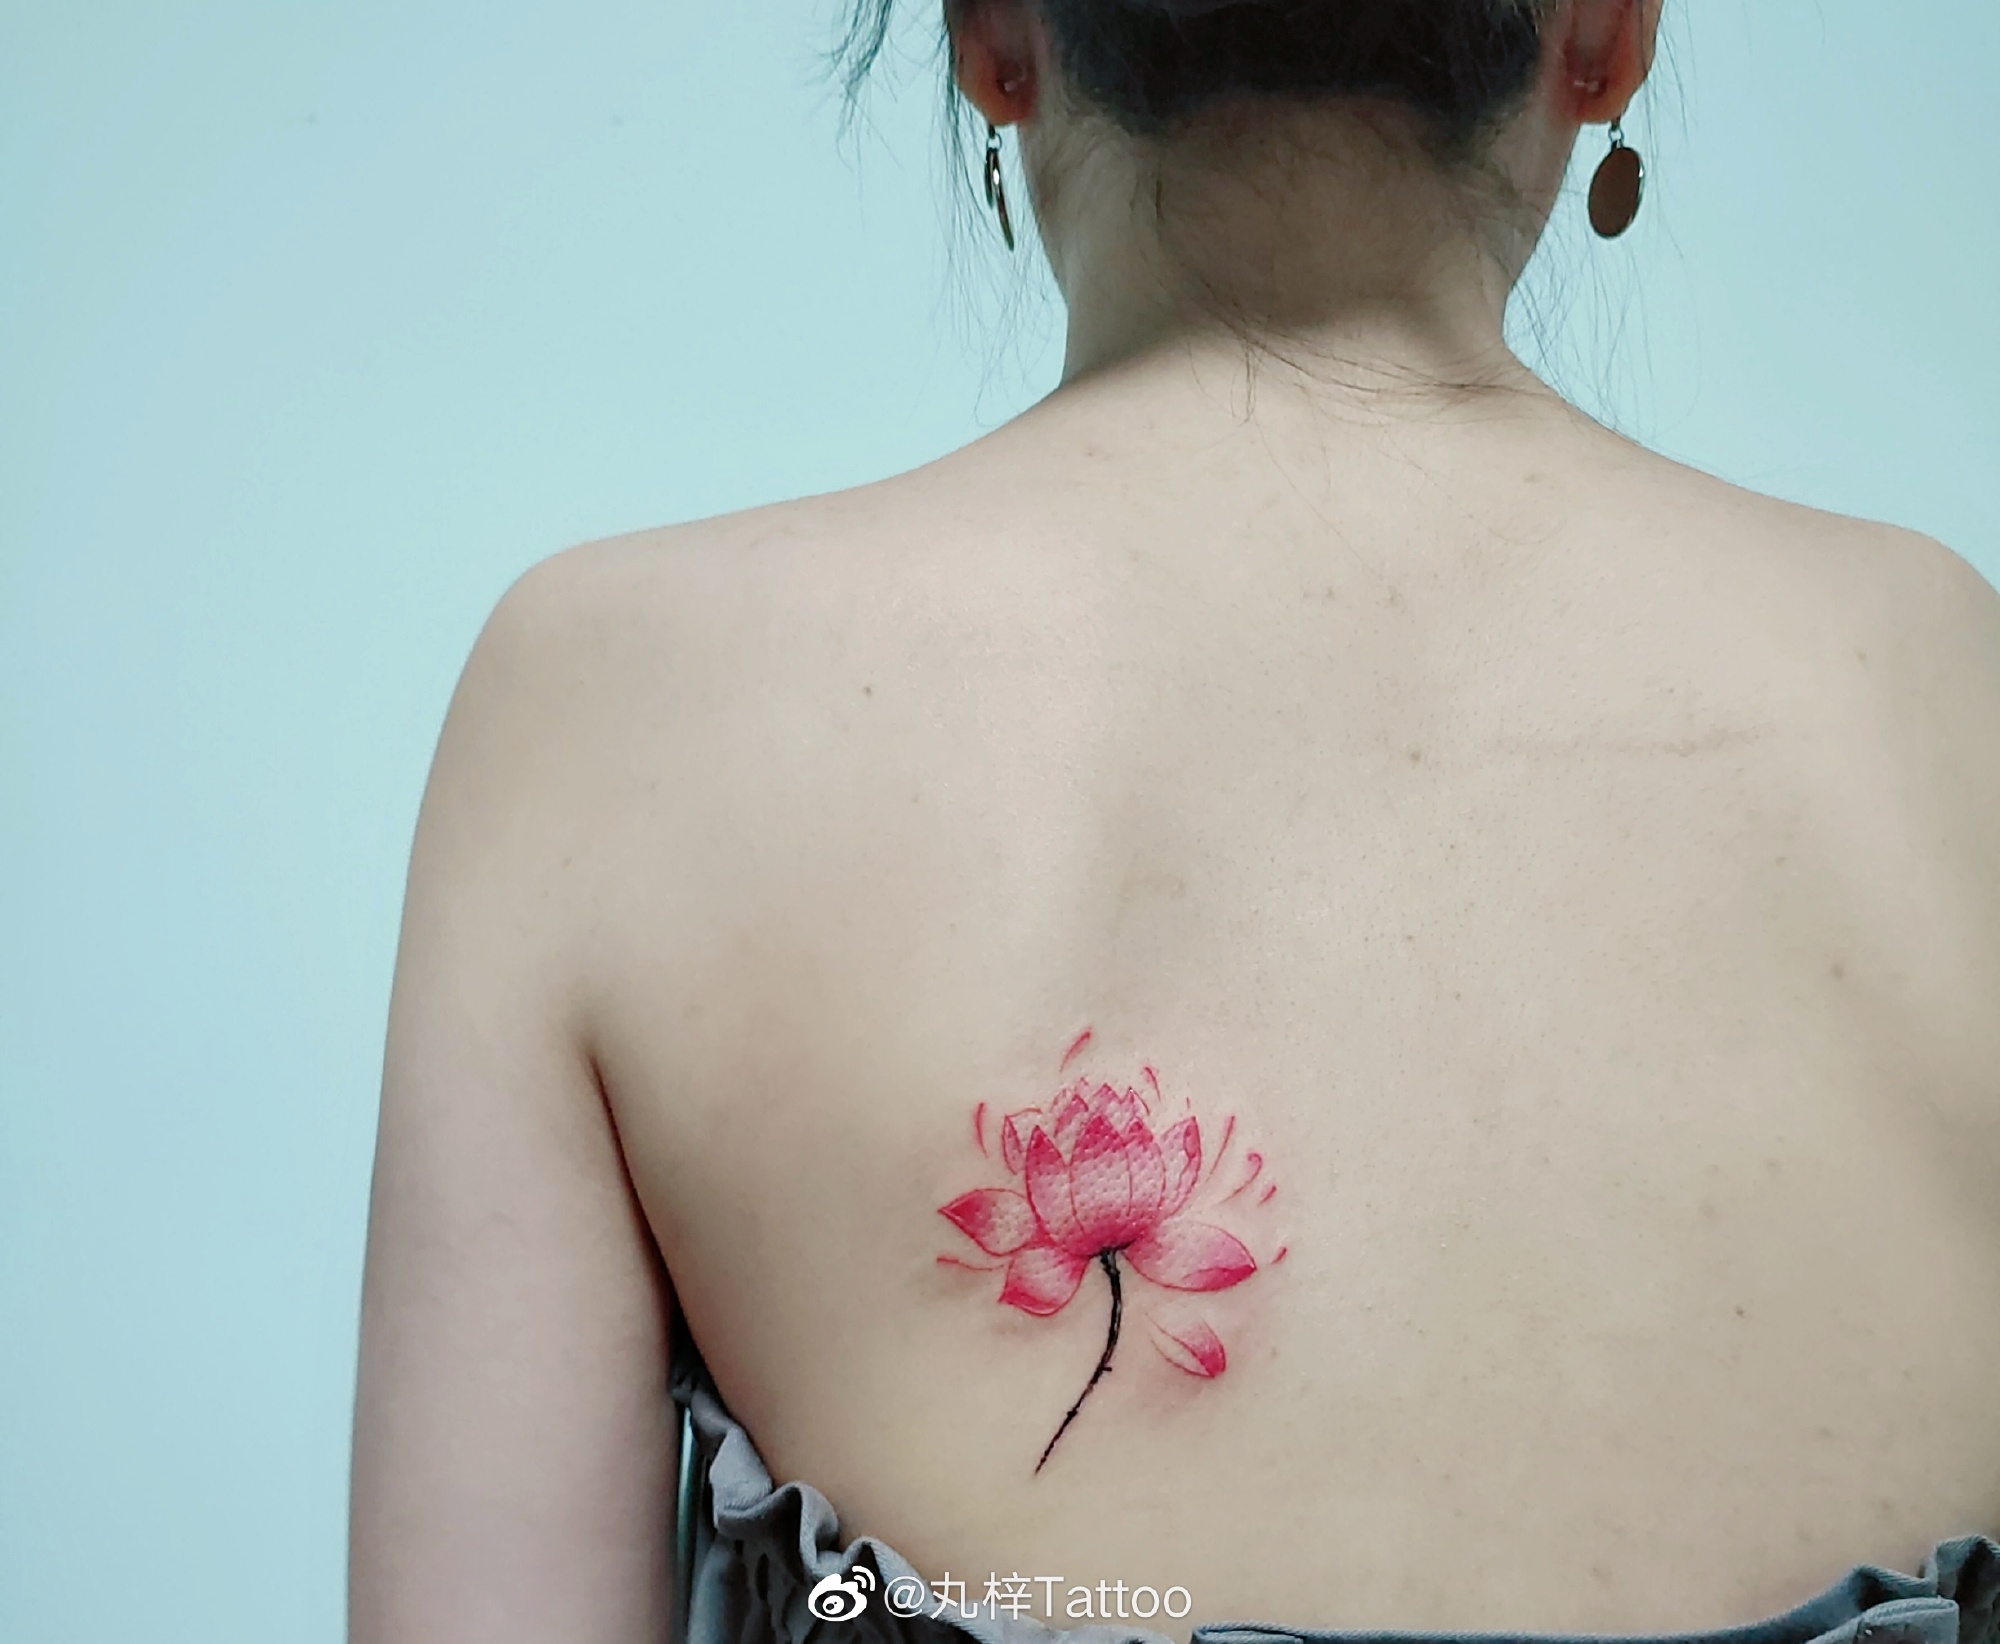 心地善良的郭小姐小腿上的盛开莲花纹身图案 - 广州纹彩刺青